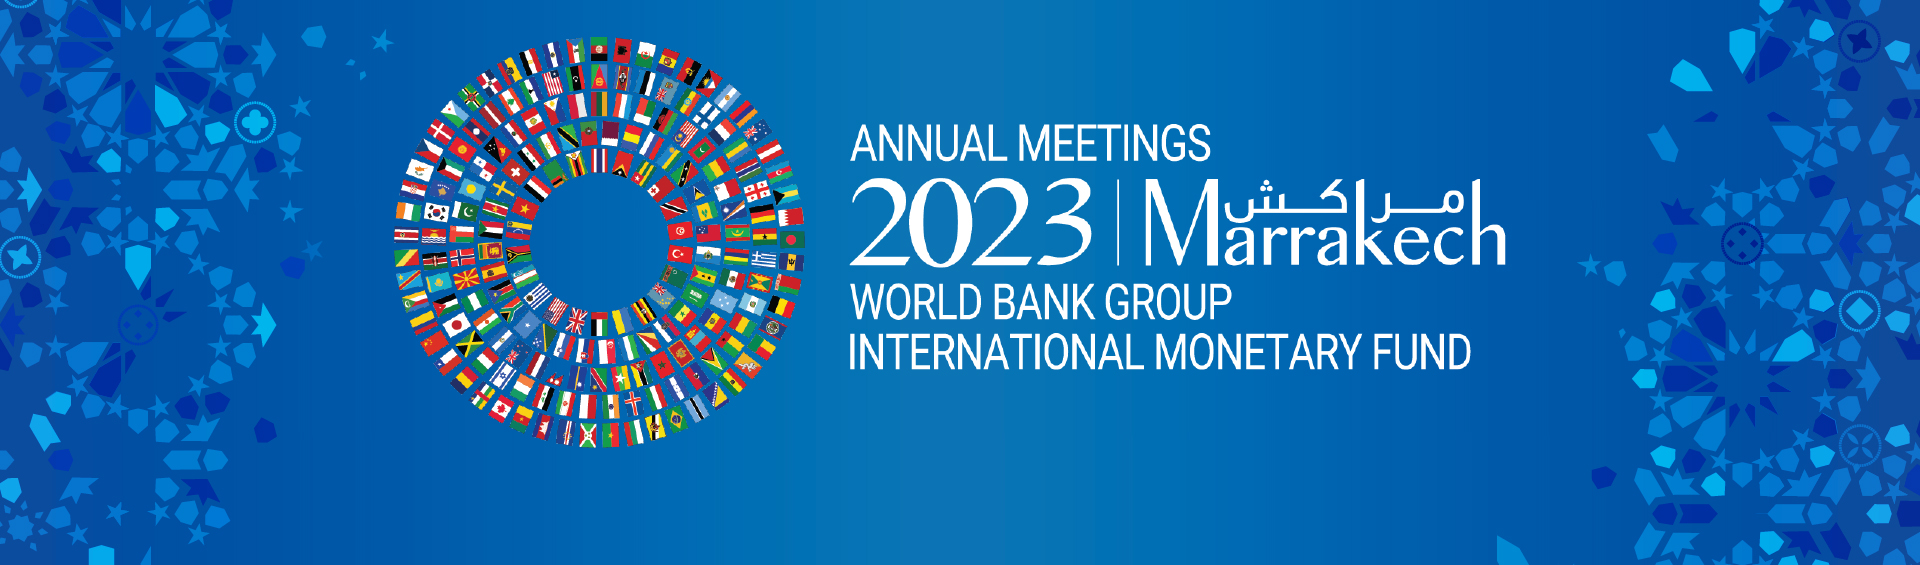 البنك الدولي وصندوق النقد الدولي يعقدان اجتماعاتهما السنوية في مراكش